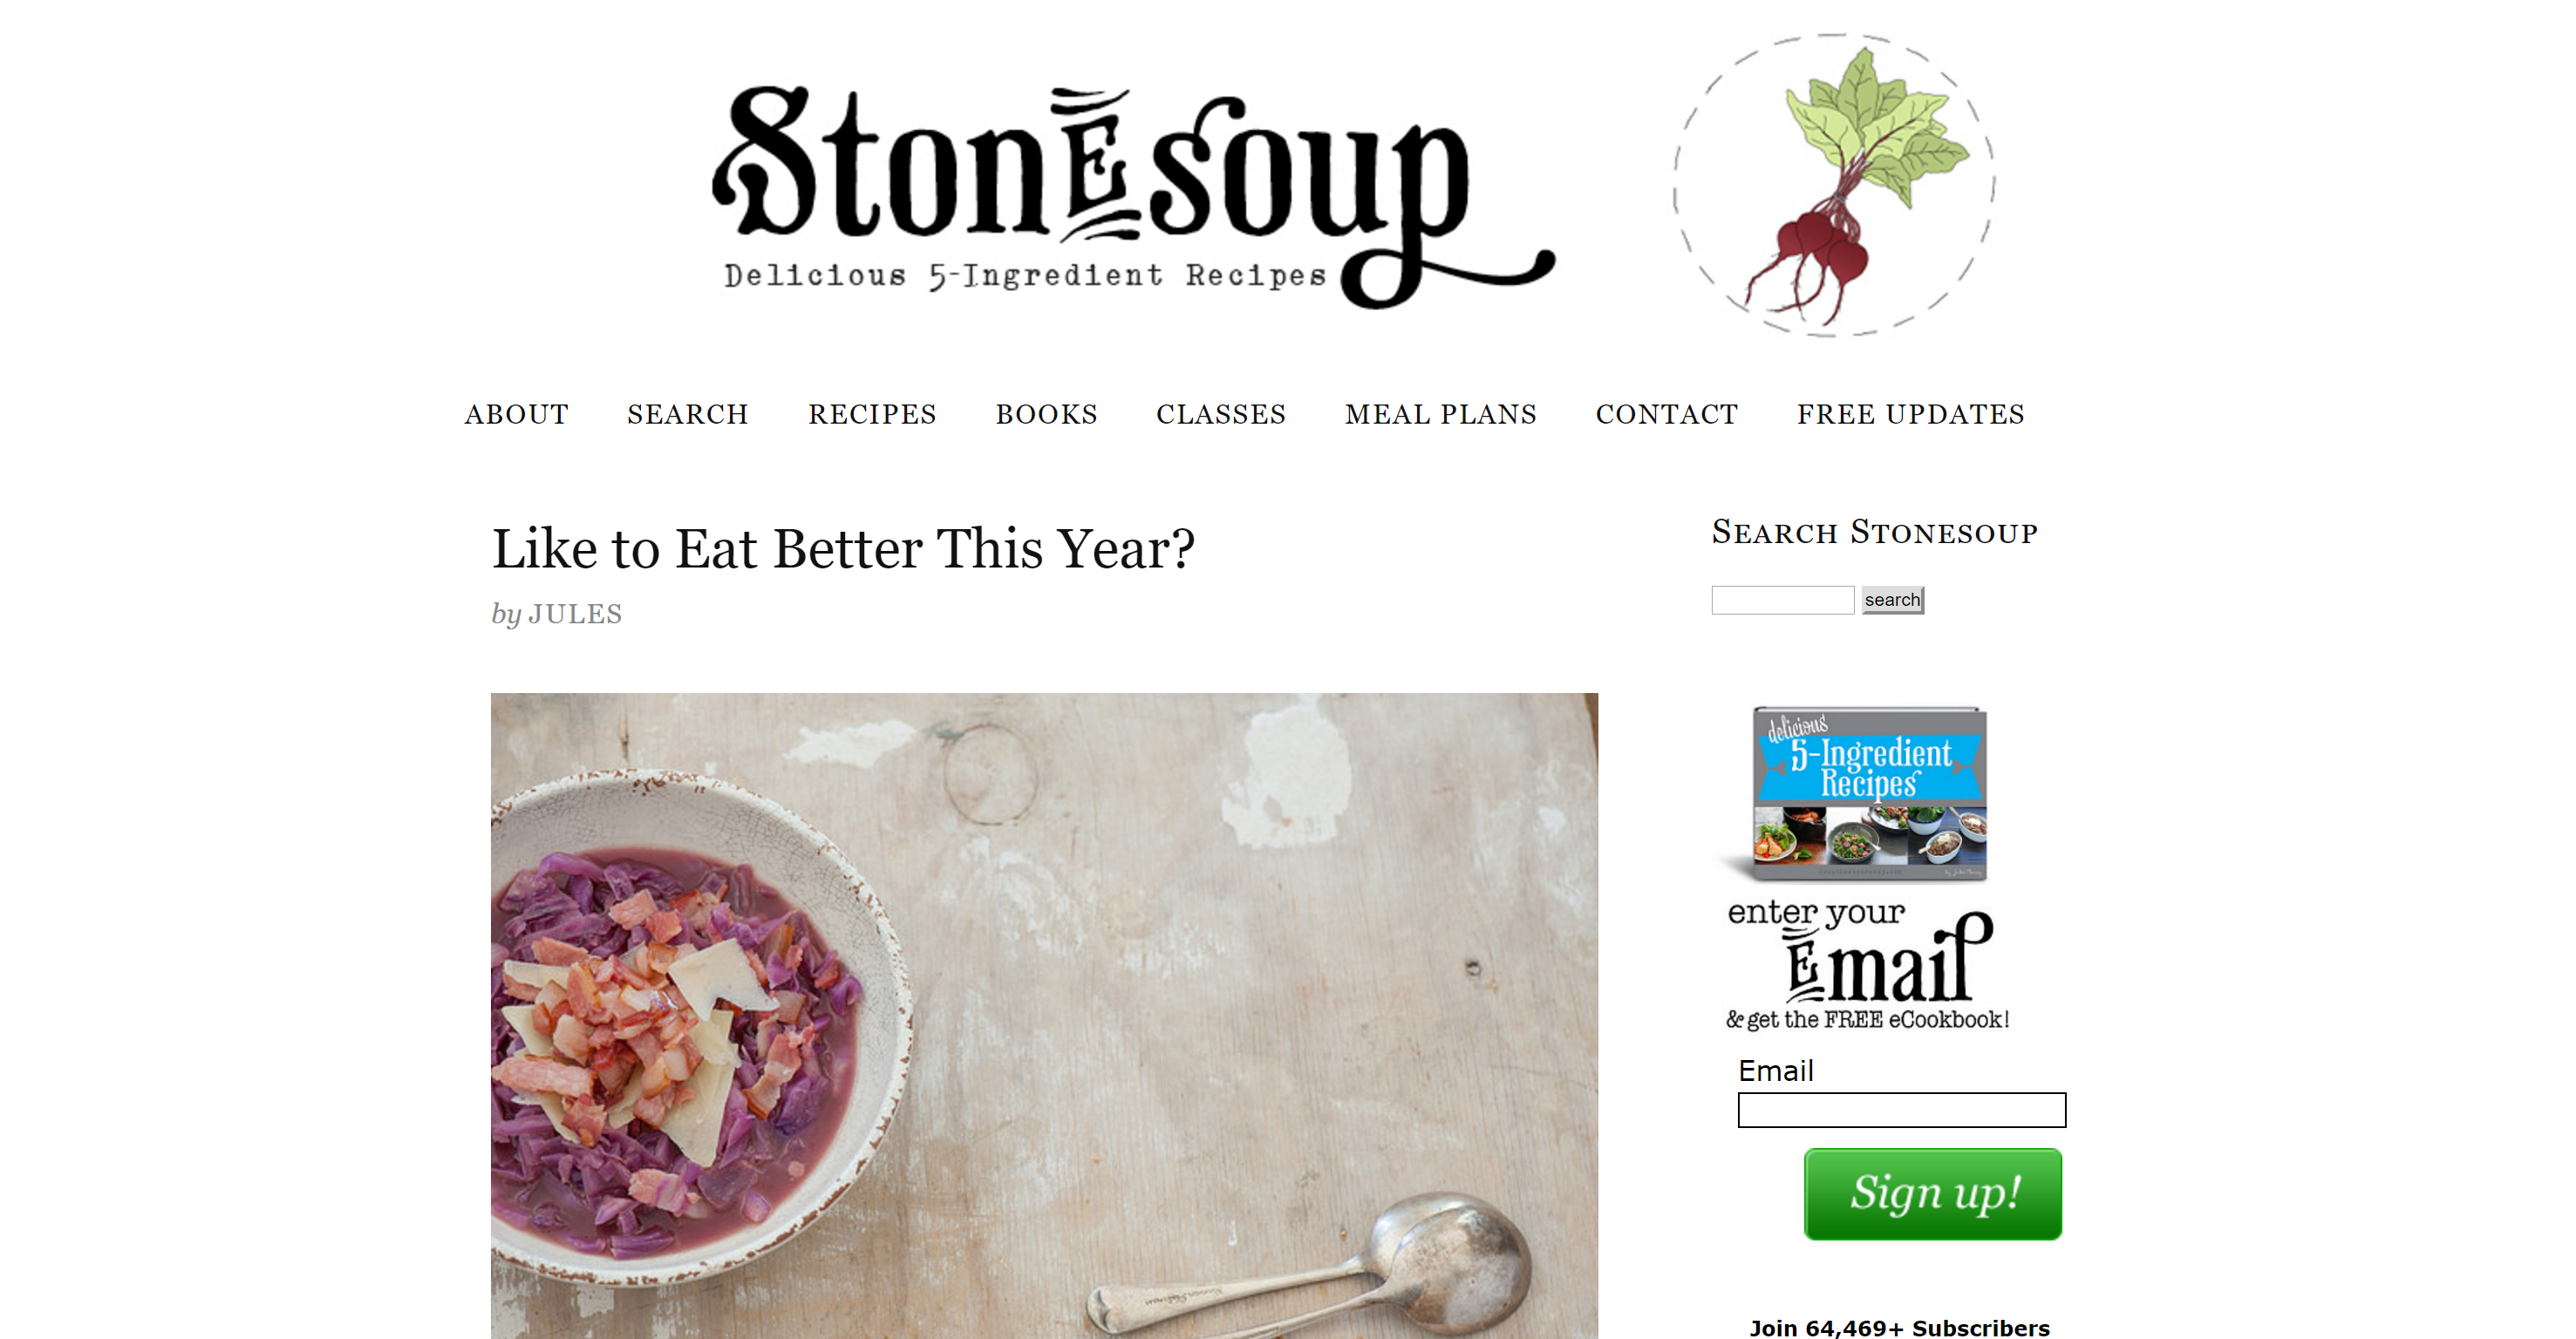 Stone soup logo